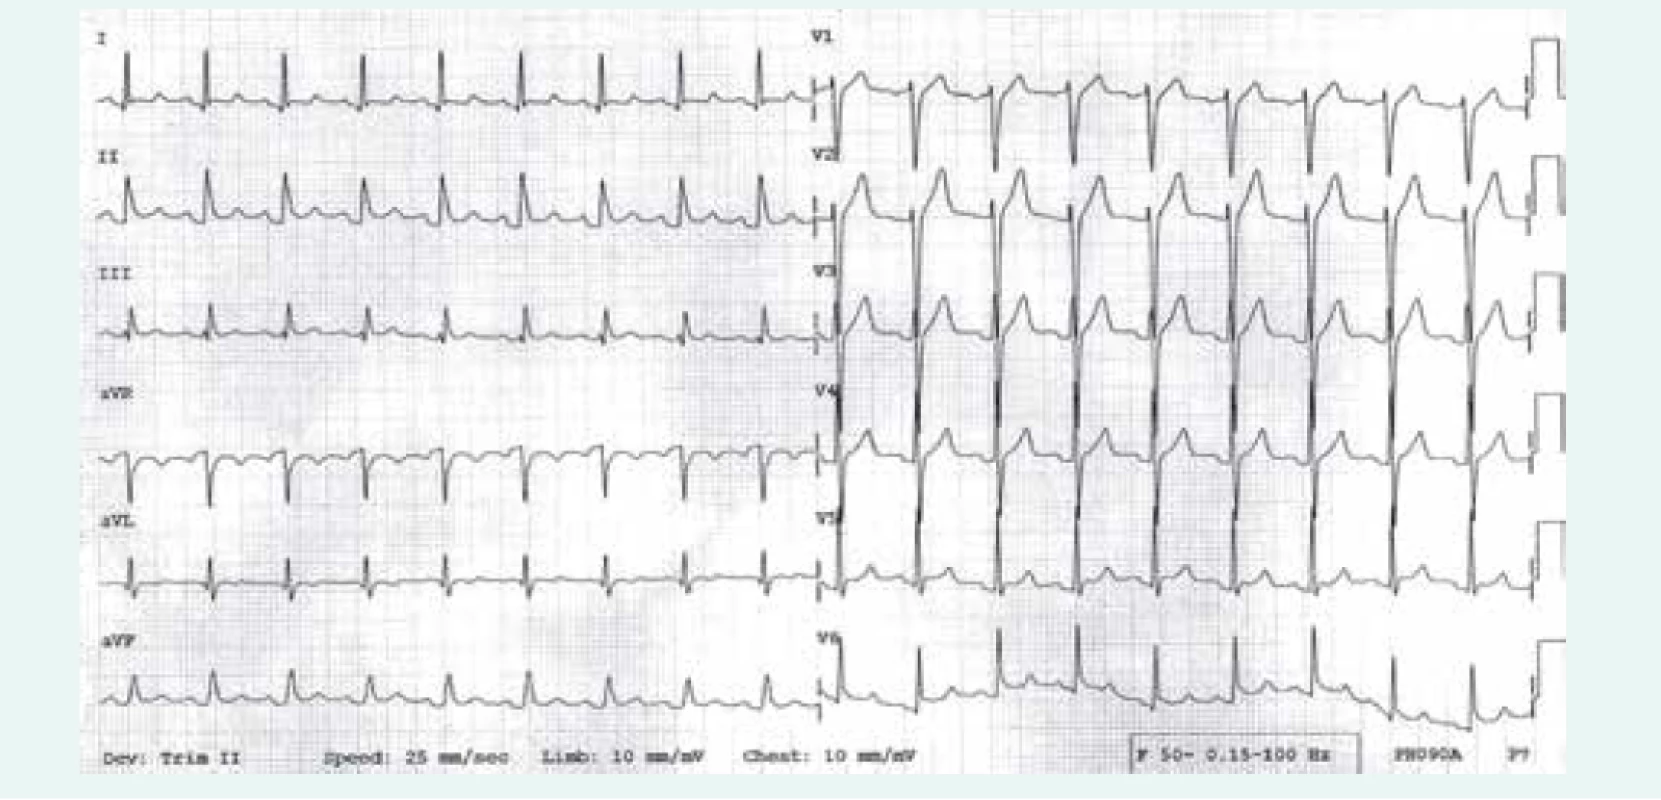 EKG nález u nemocného s akutní perikarditidou: patrny jsou difuzní, vzhůru konkávní elevace ST úseku,
doprovázené depresemi úseku PR (1. fáze EKG změn)